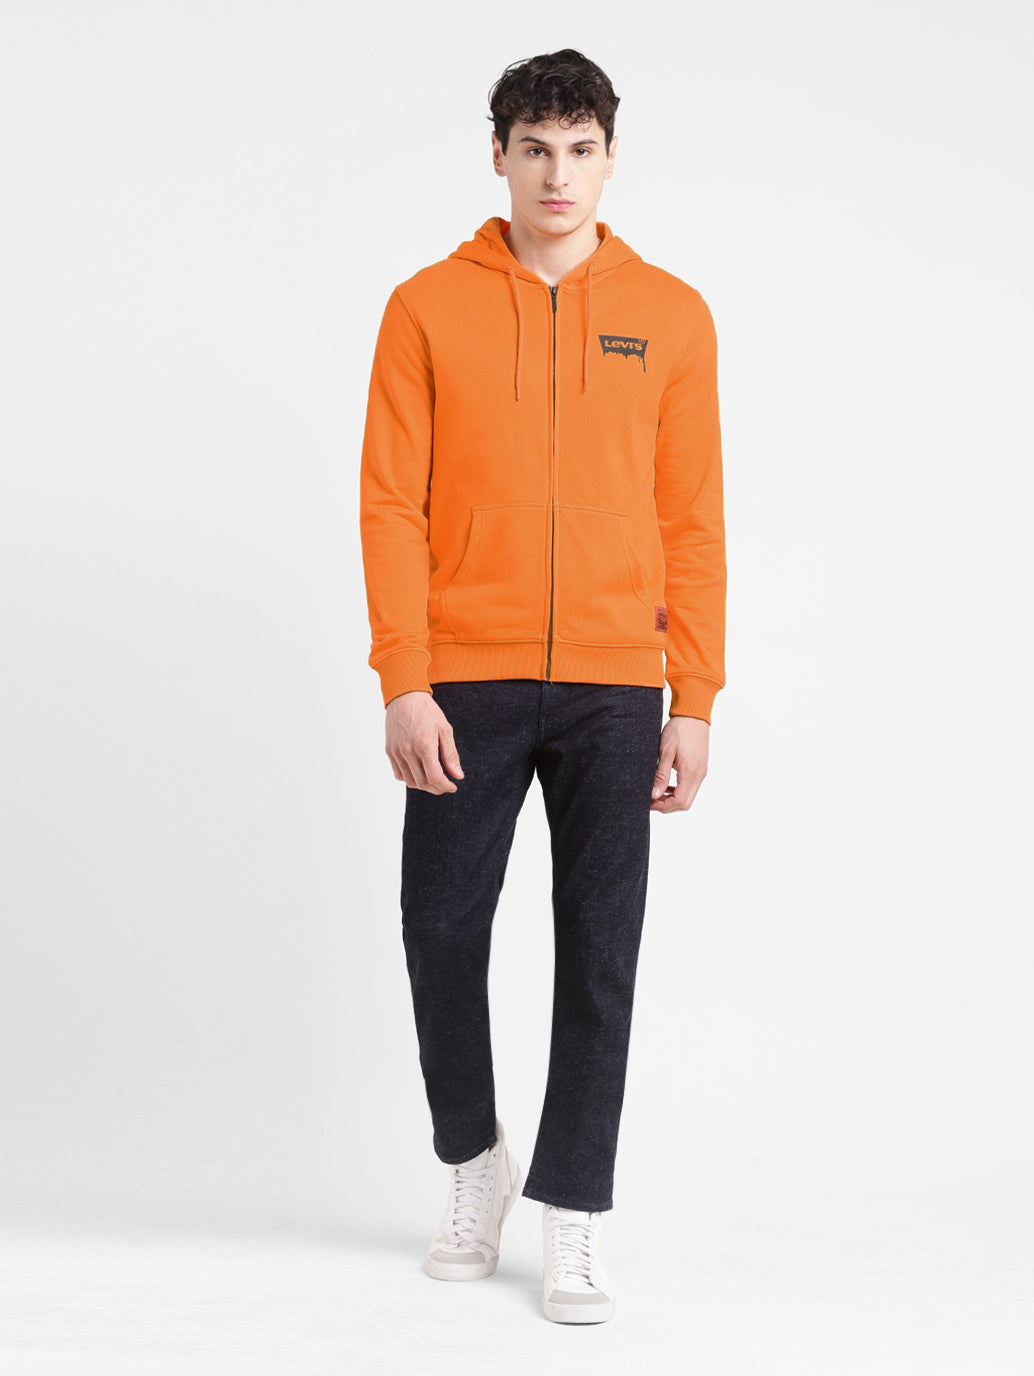 Men's Solid Orange Hooded Sweatshirt – Levis India Store